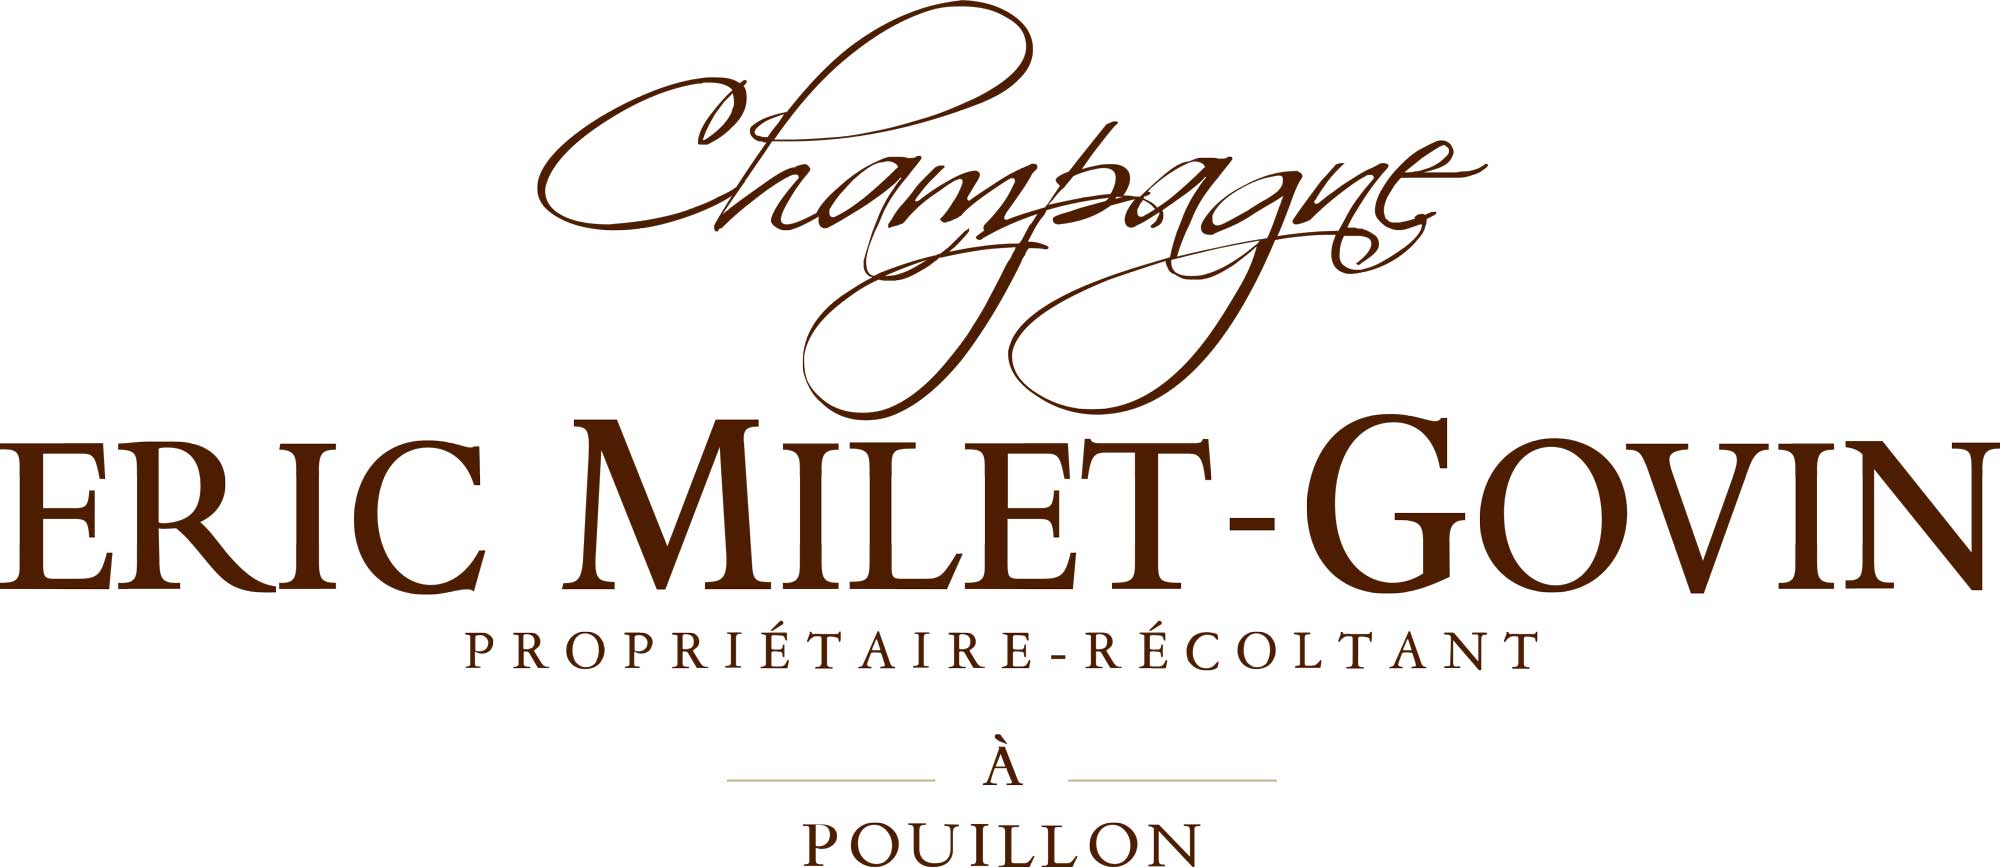 Champagne Eric Milet Govin